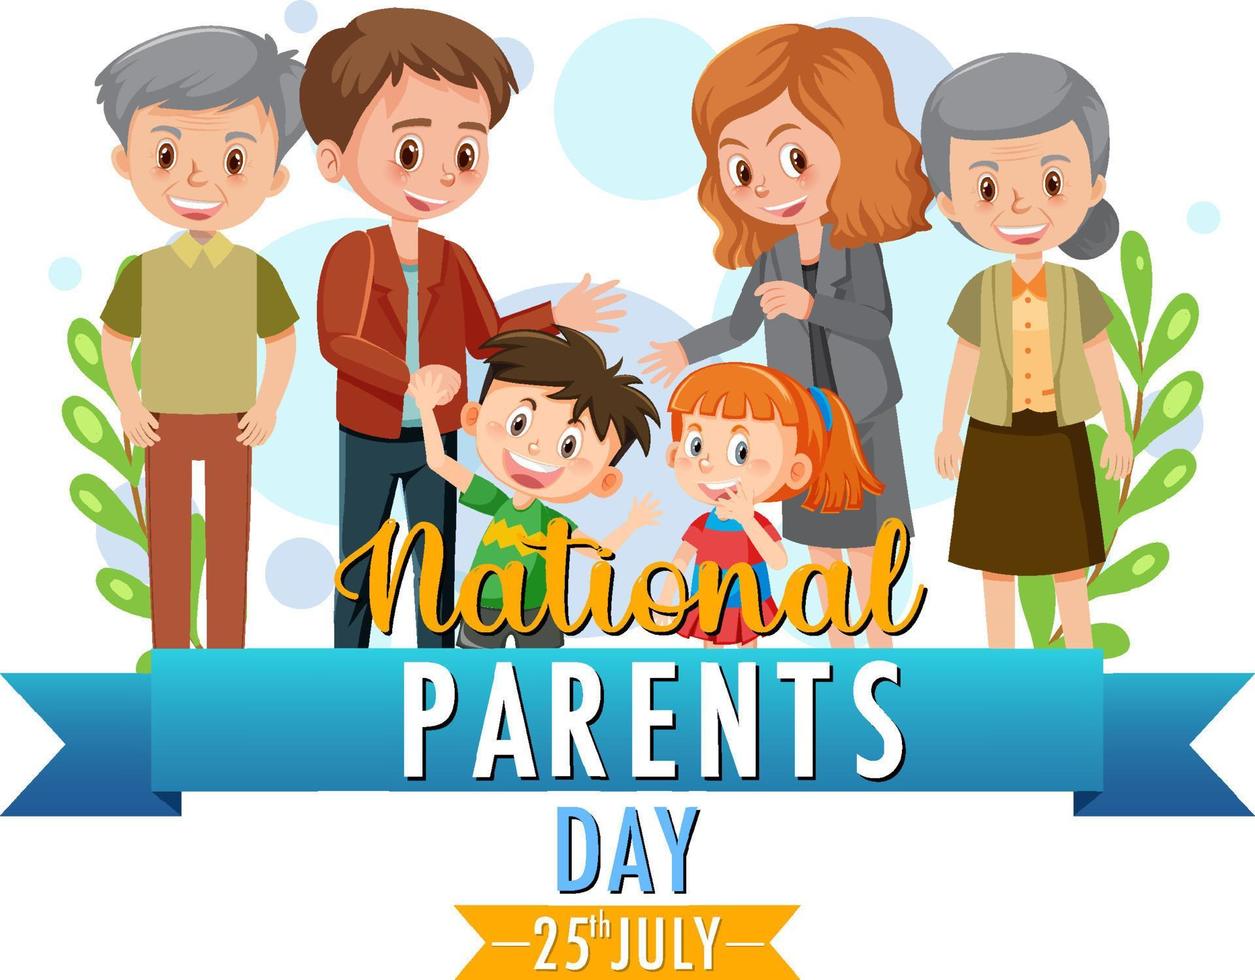 plantilla de póster del día nacional de los padres el 25 de julio vector